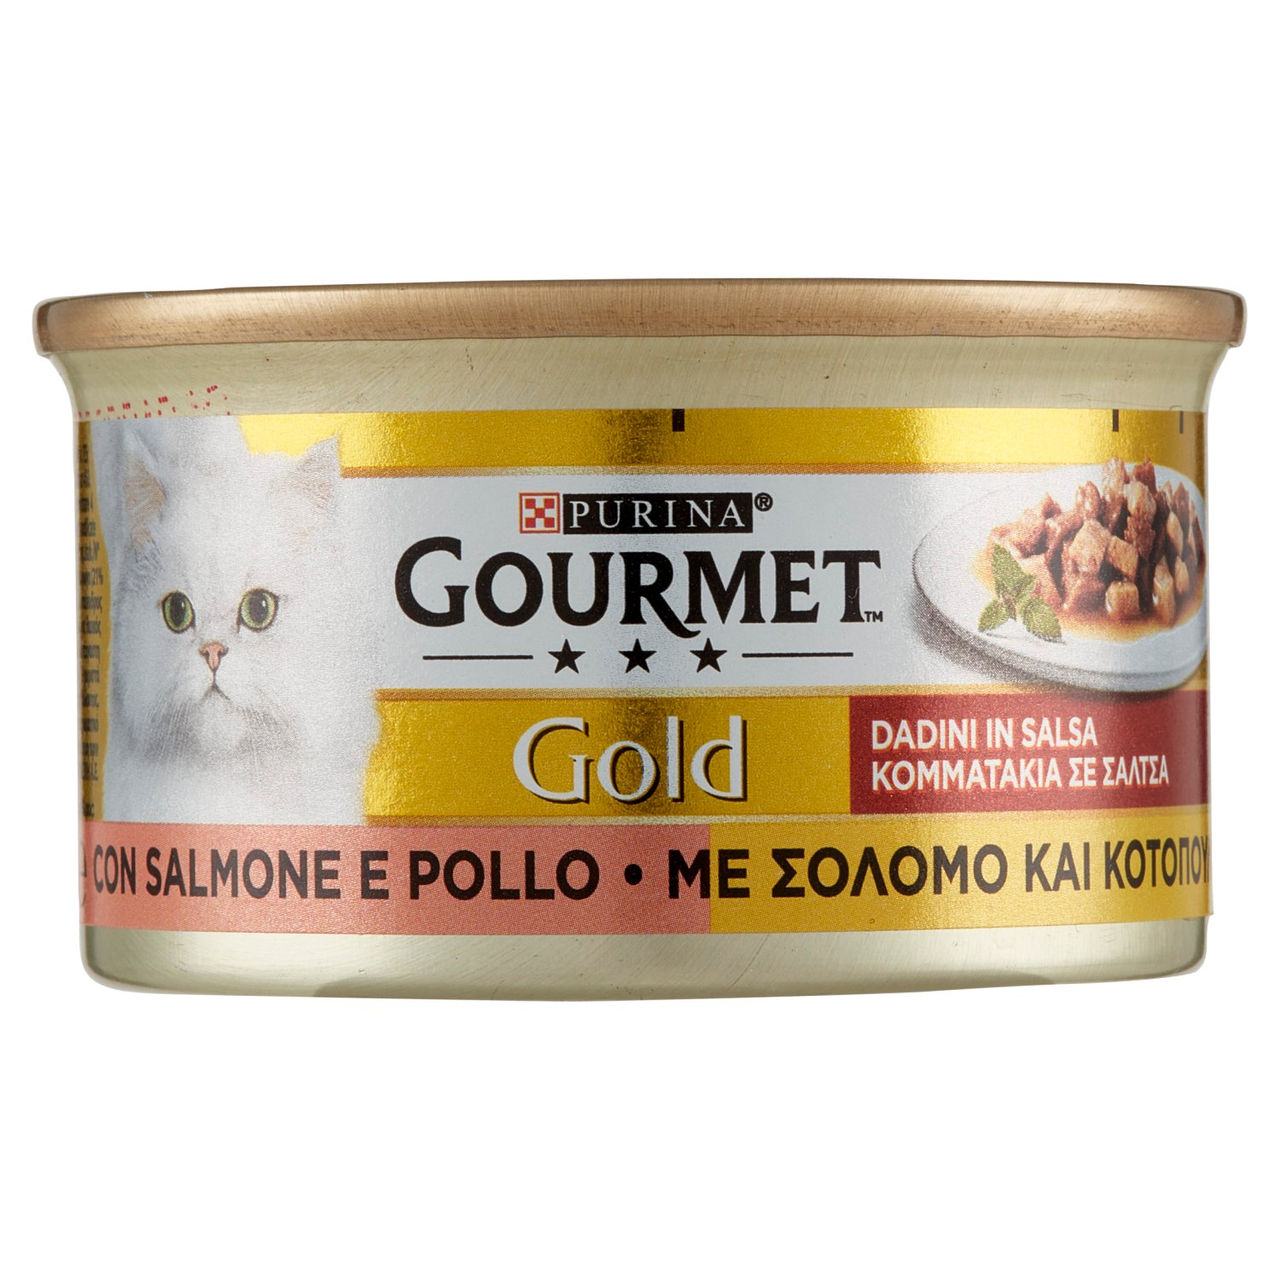 Gold Gatto Dadini Salmone Pollo 85g Purina Gourmet